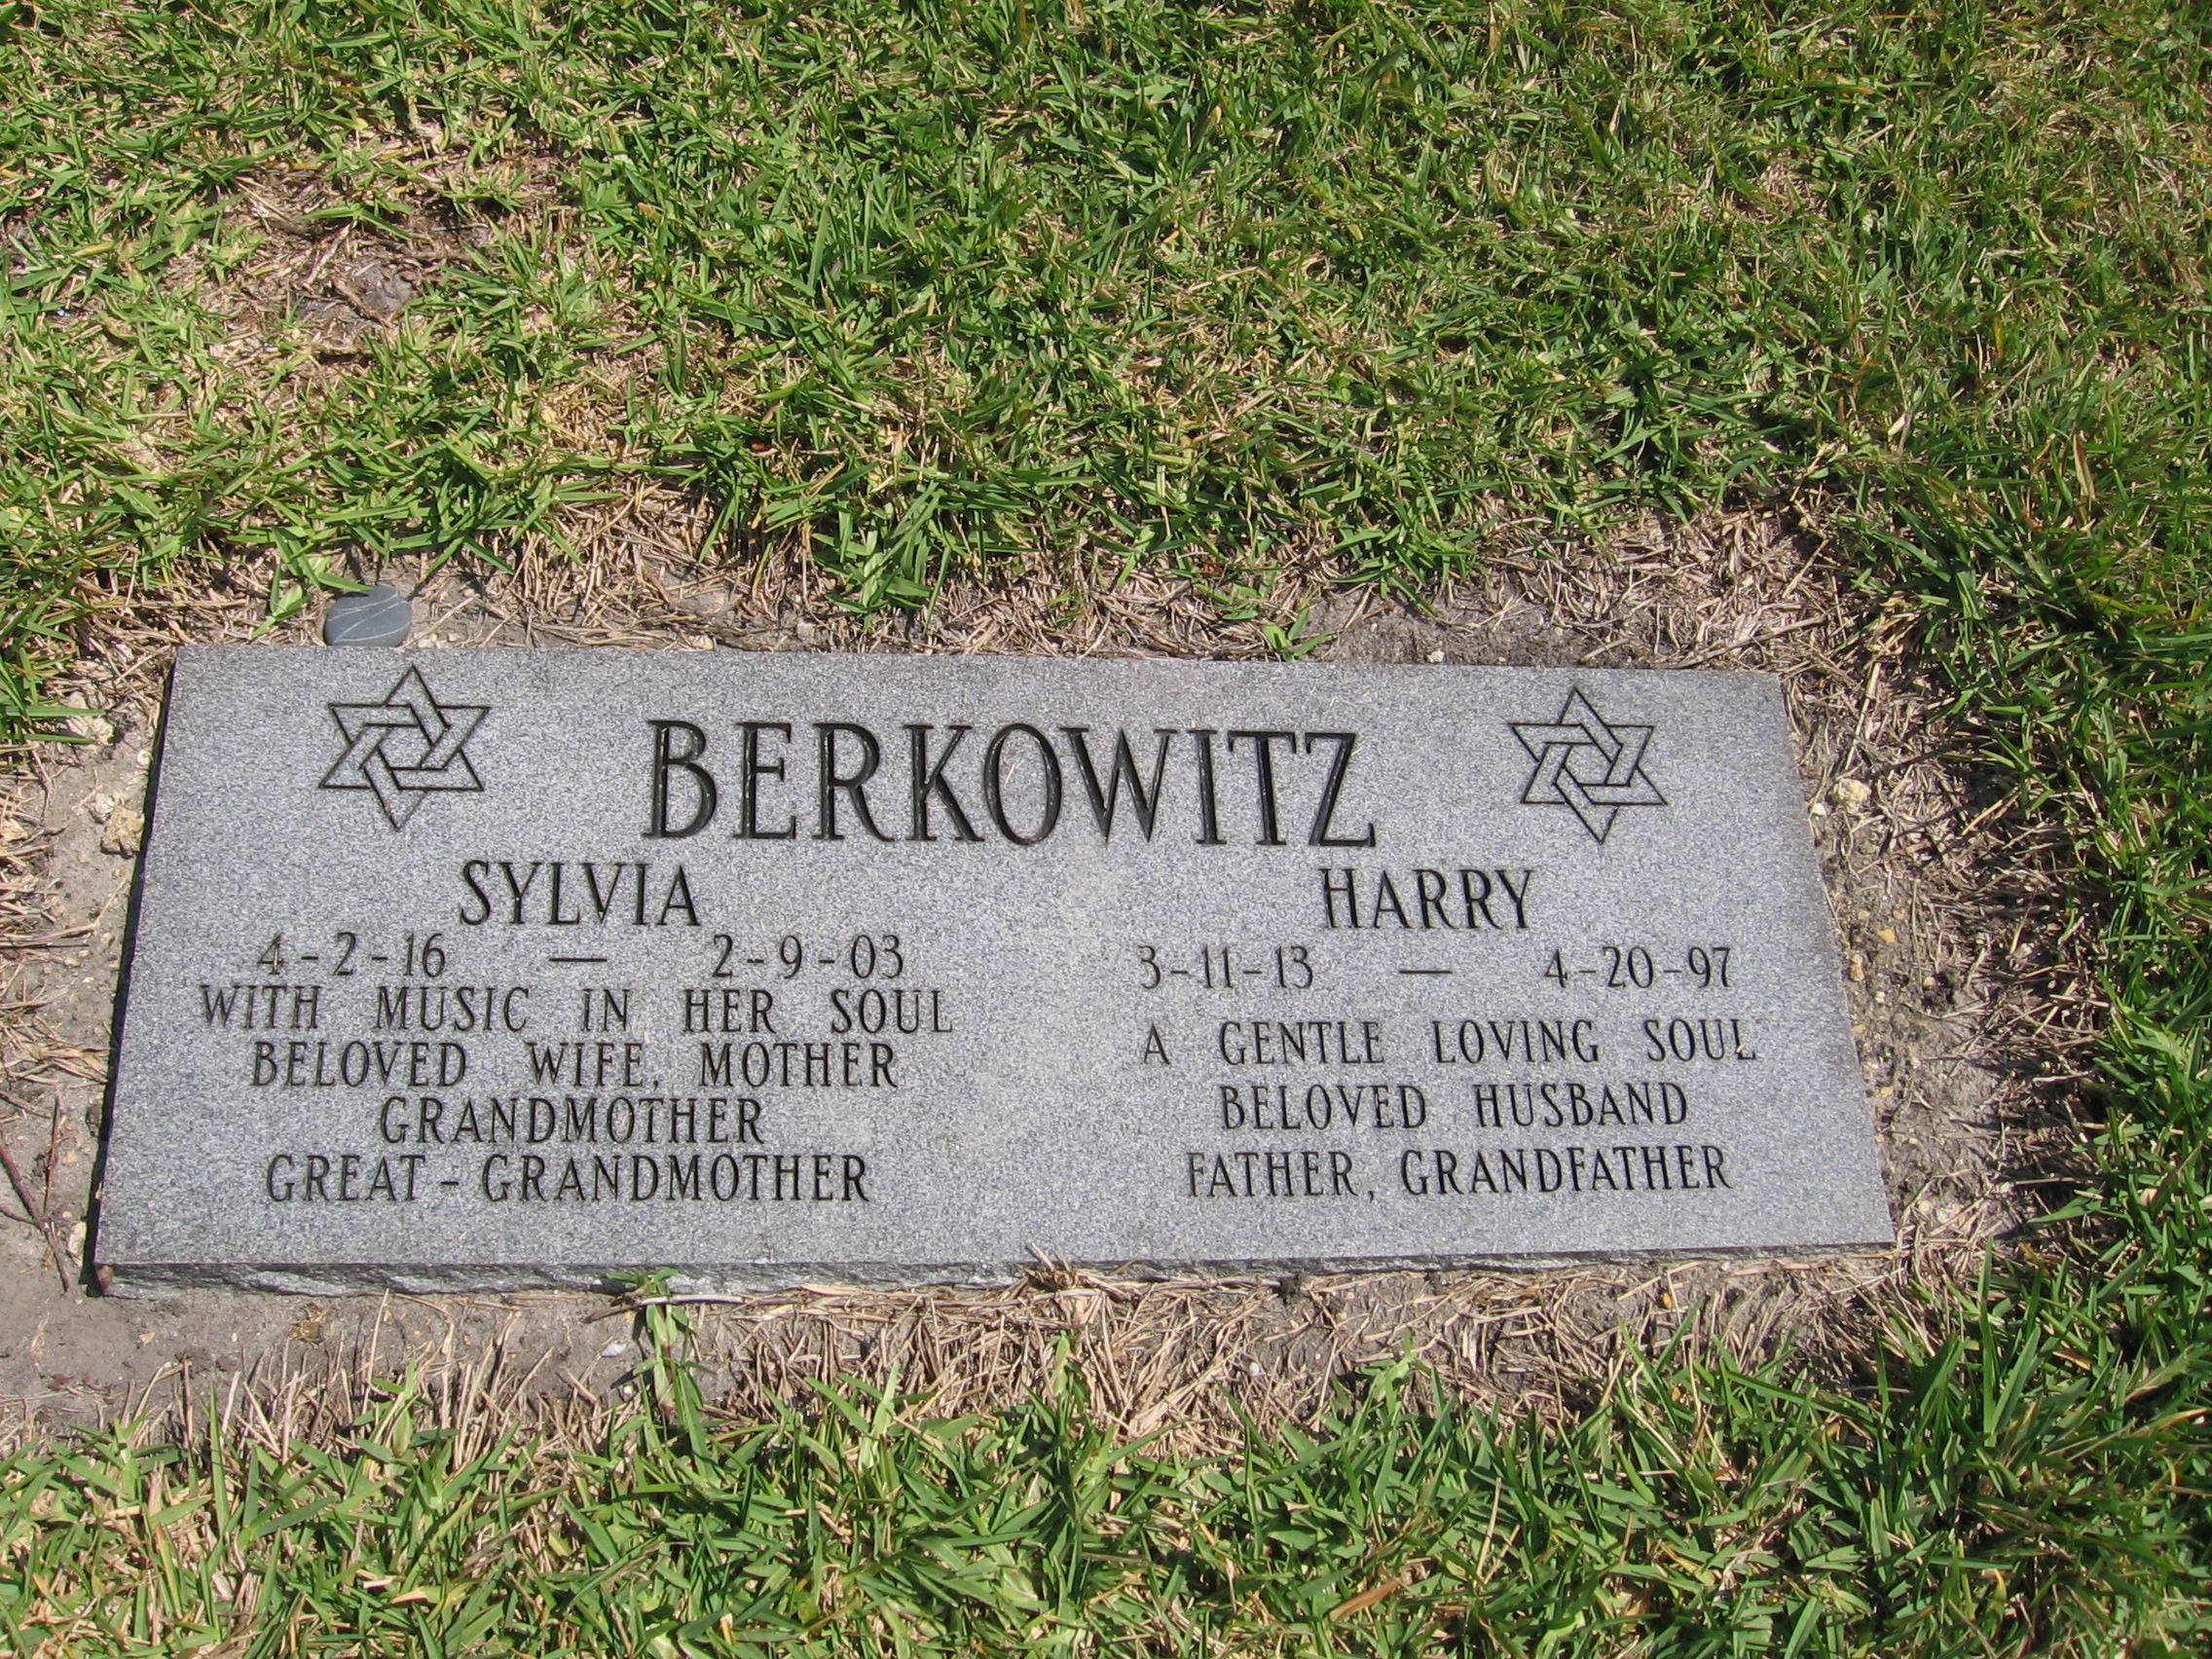 Harry Berkowitz